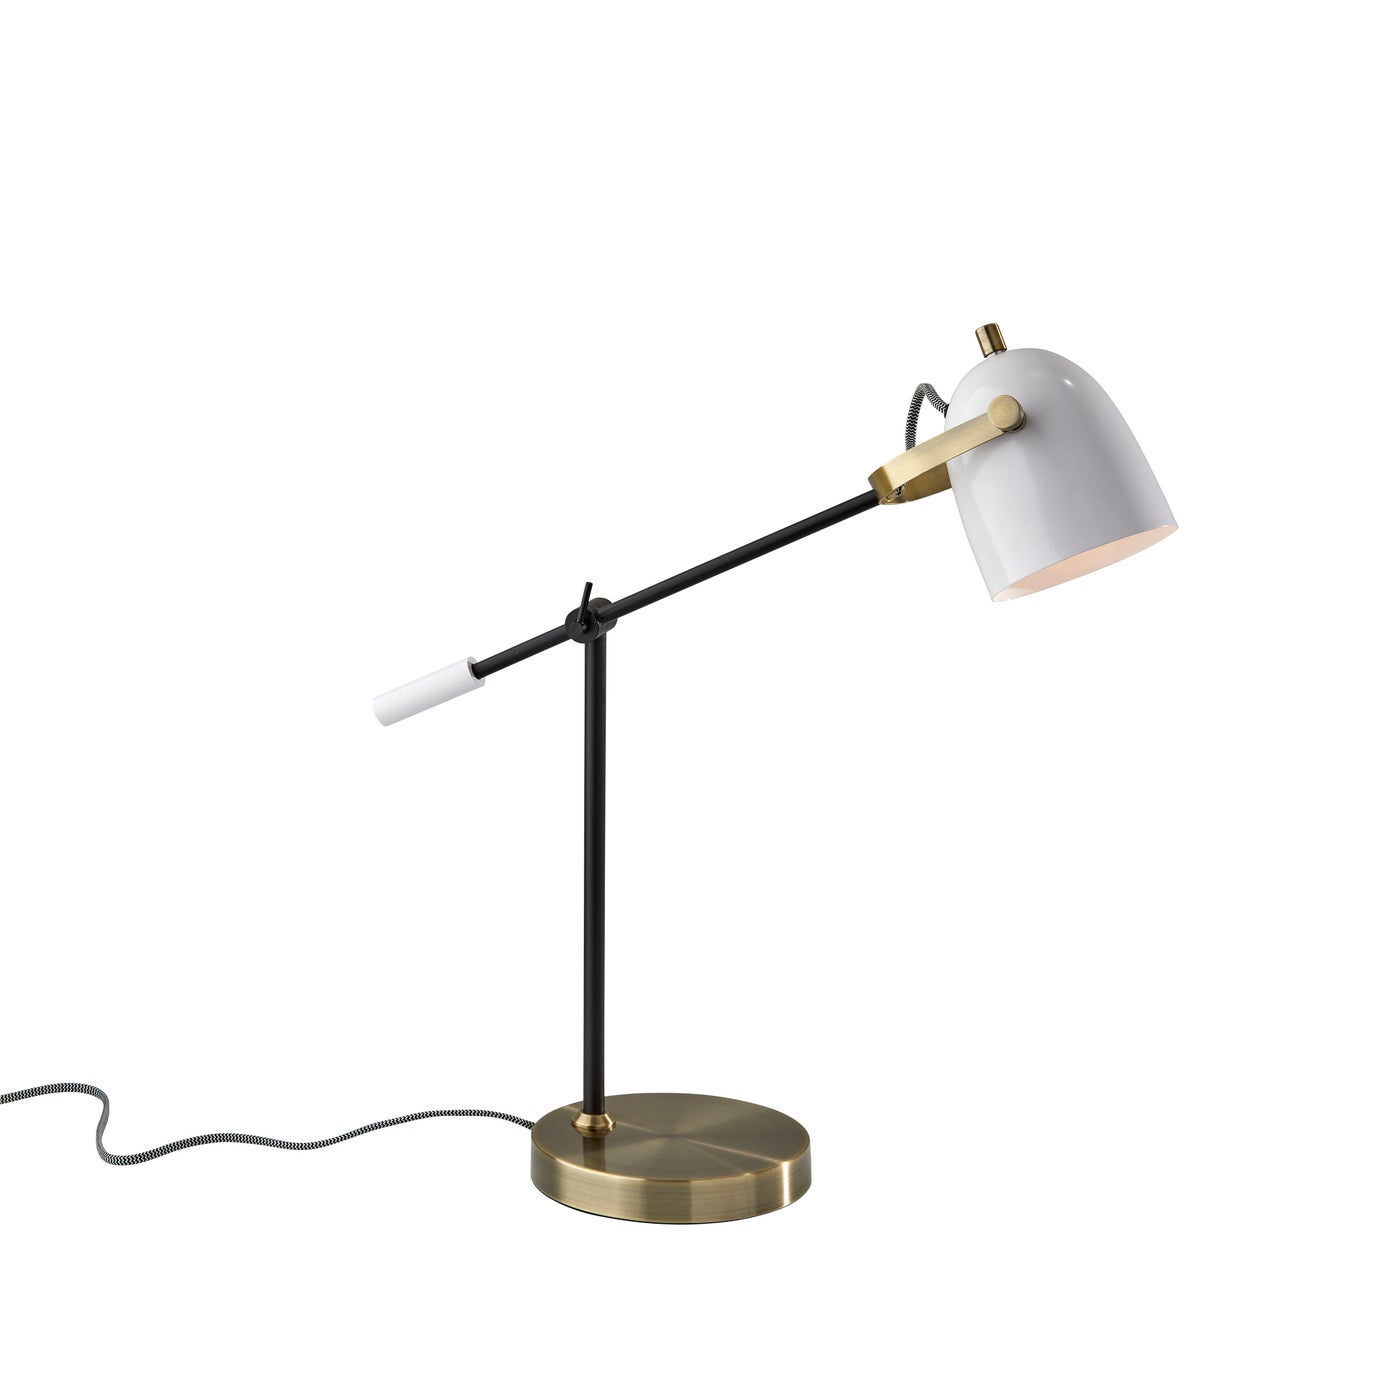 Adesso Home - 3494-21 - Desk Lamp - Casey - Black, White & Antique Brass